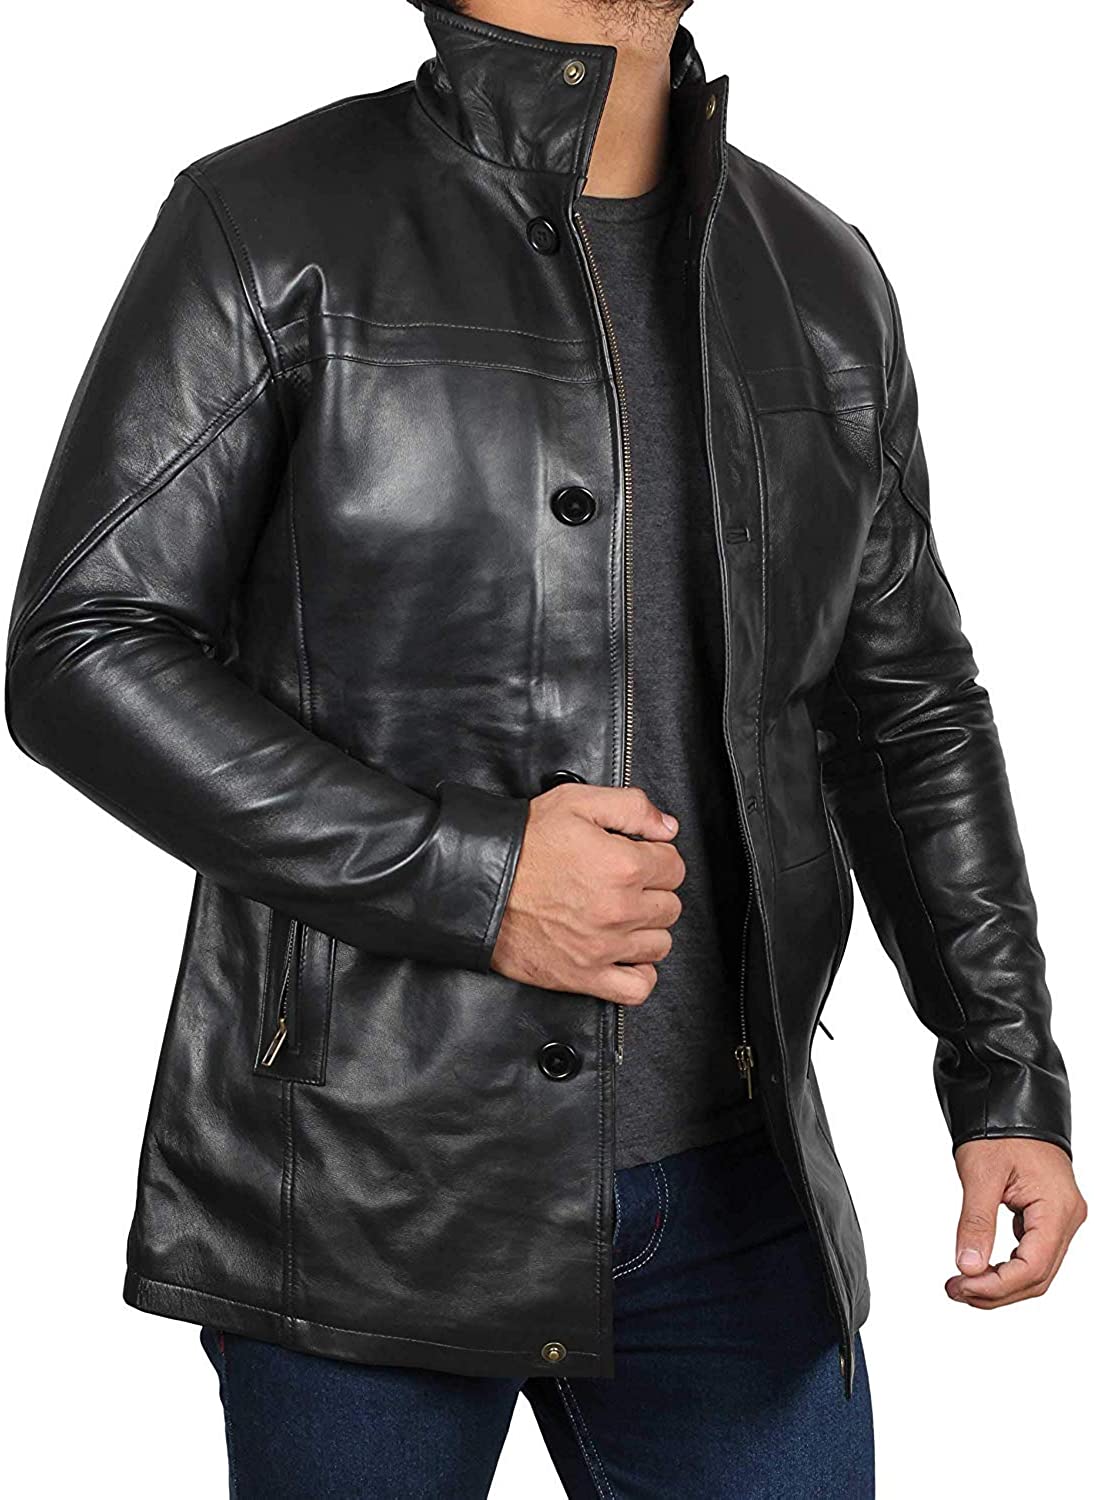 Ebay coats and jackets